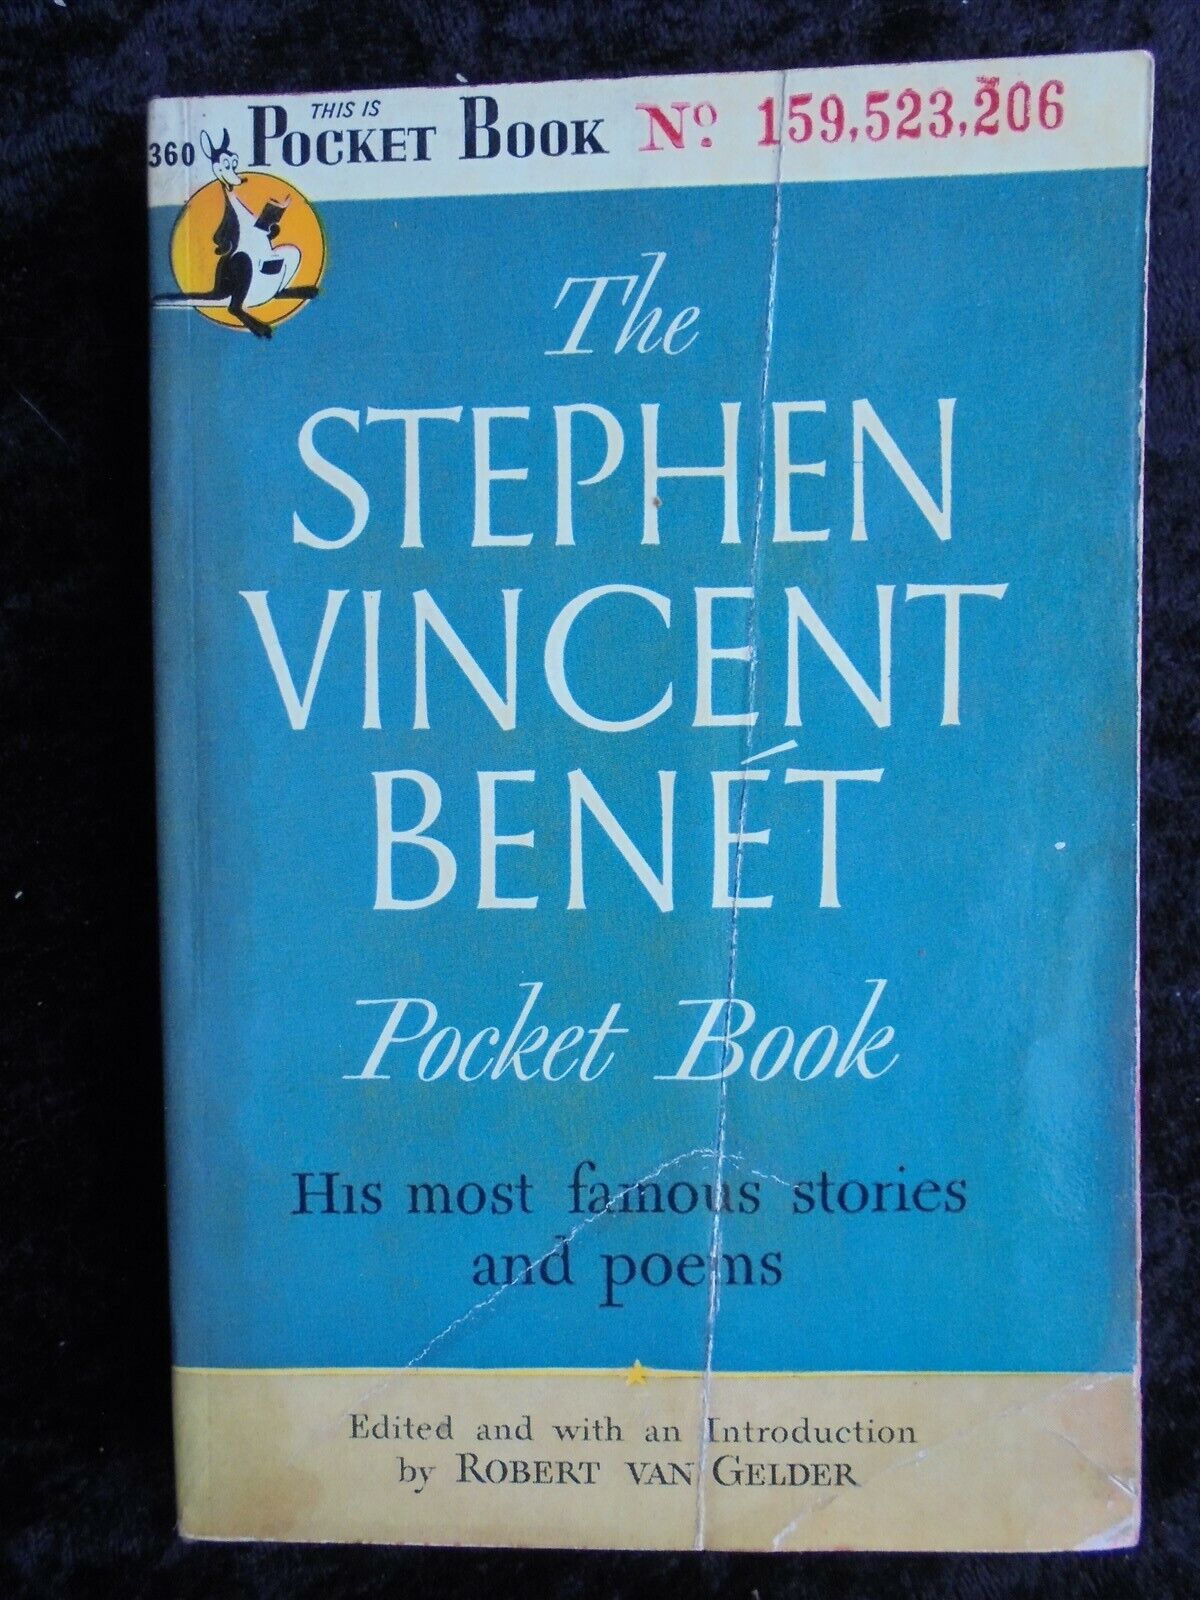 THE STEPHEN VINCENT BENET POCKET BOOK ROBERT VAN GELDER COLLECTIBLE NOVEL